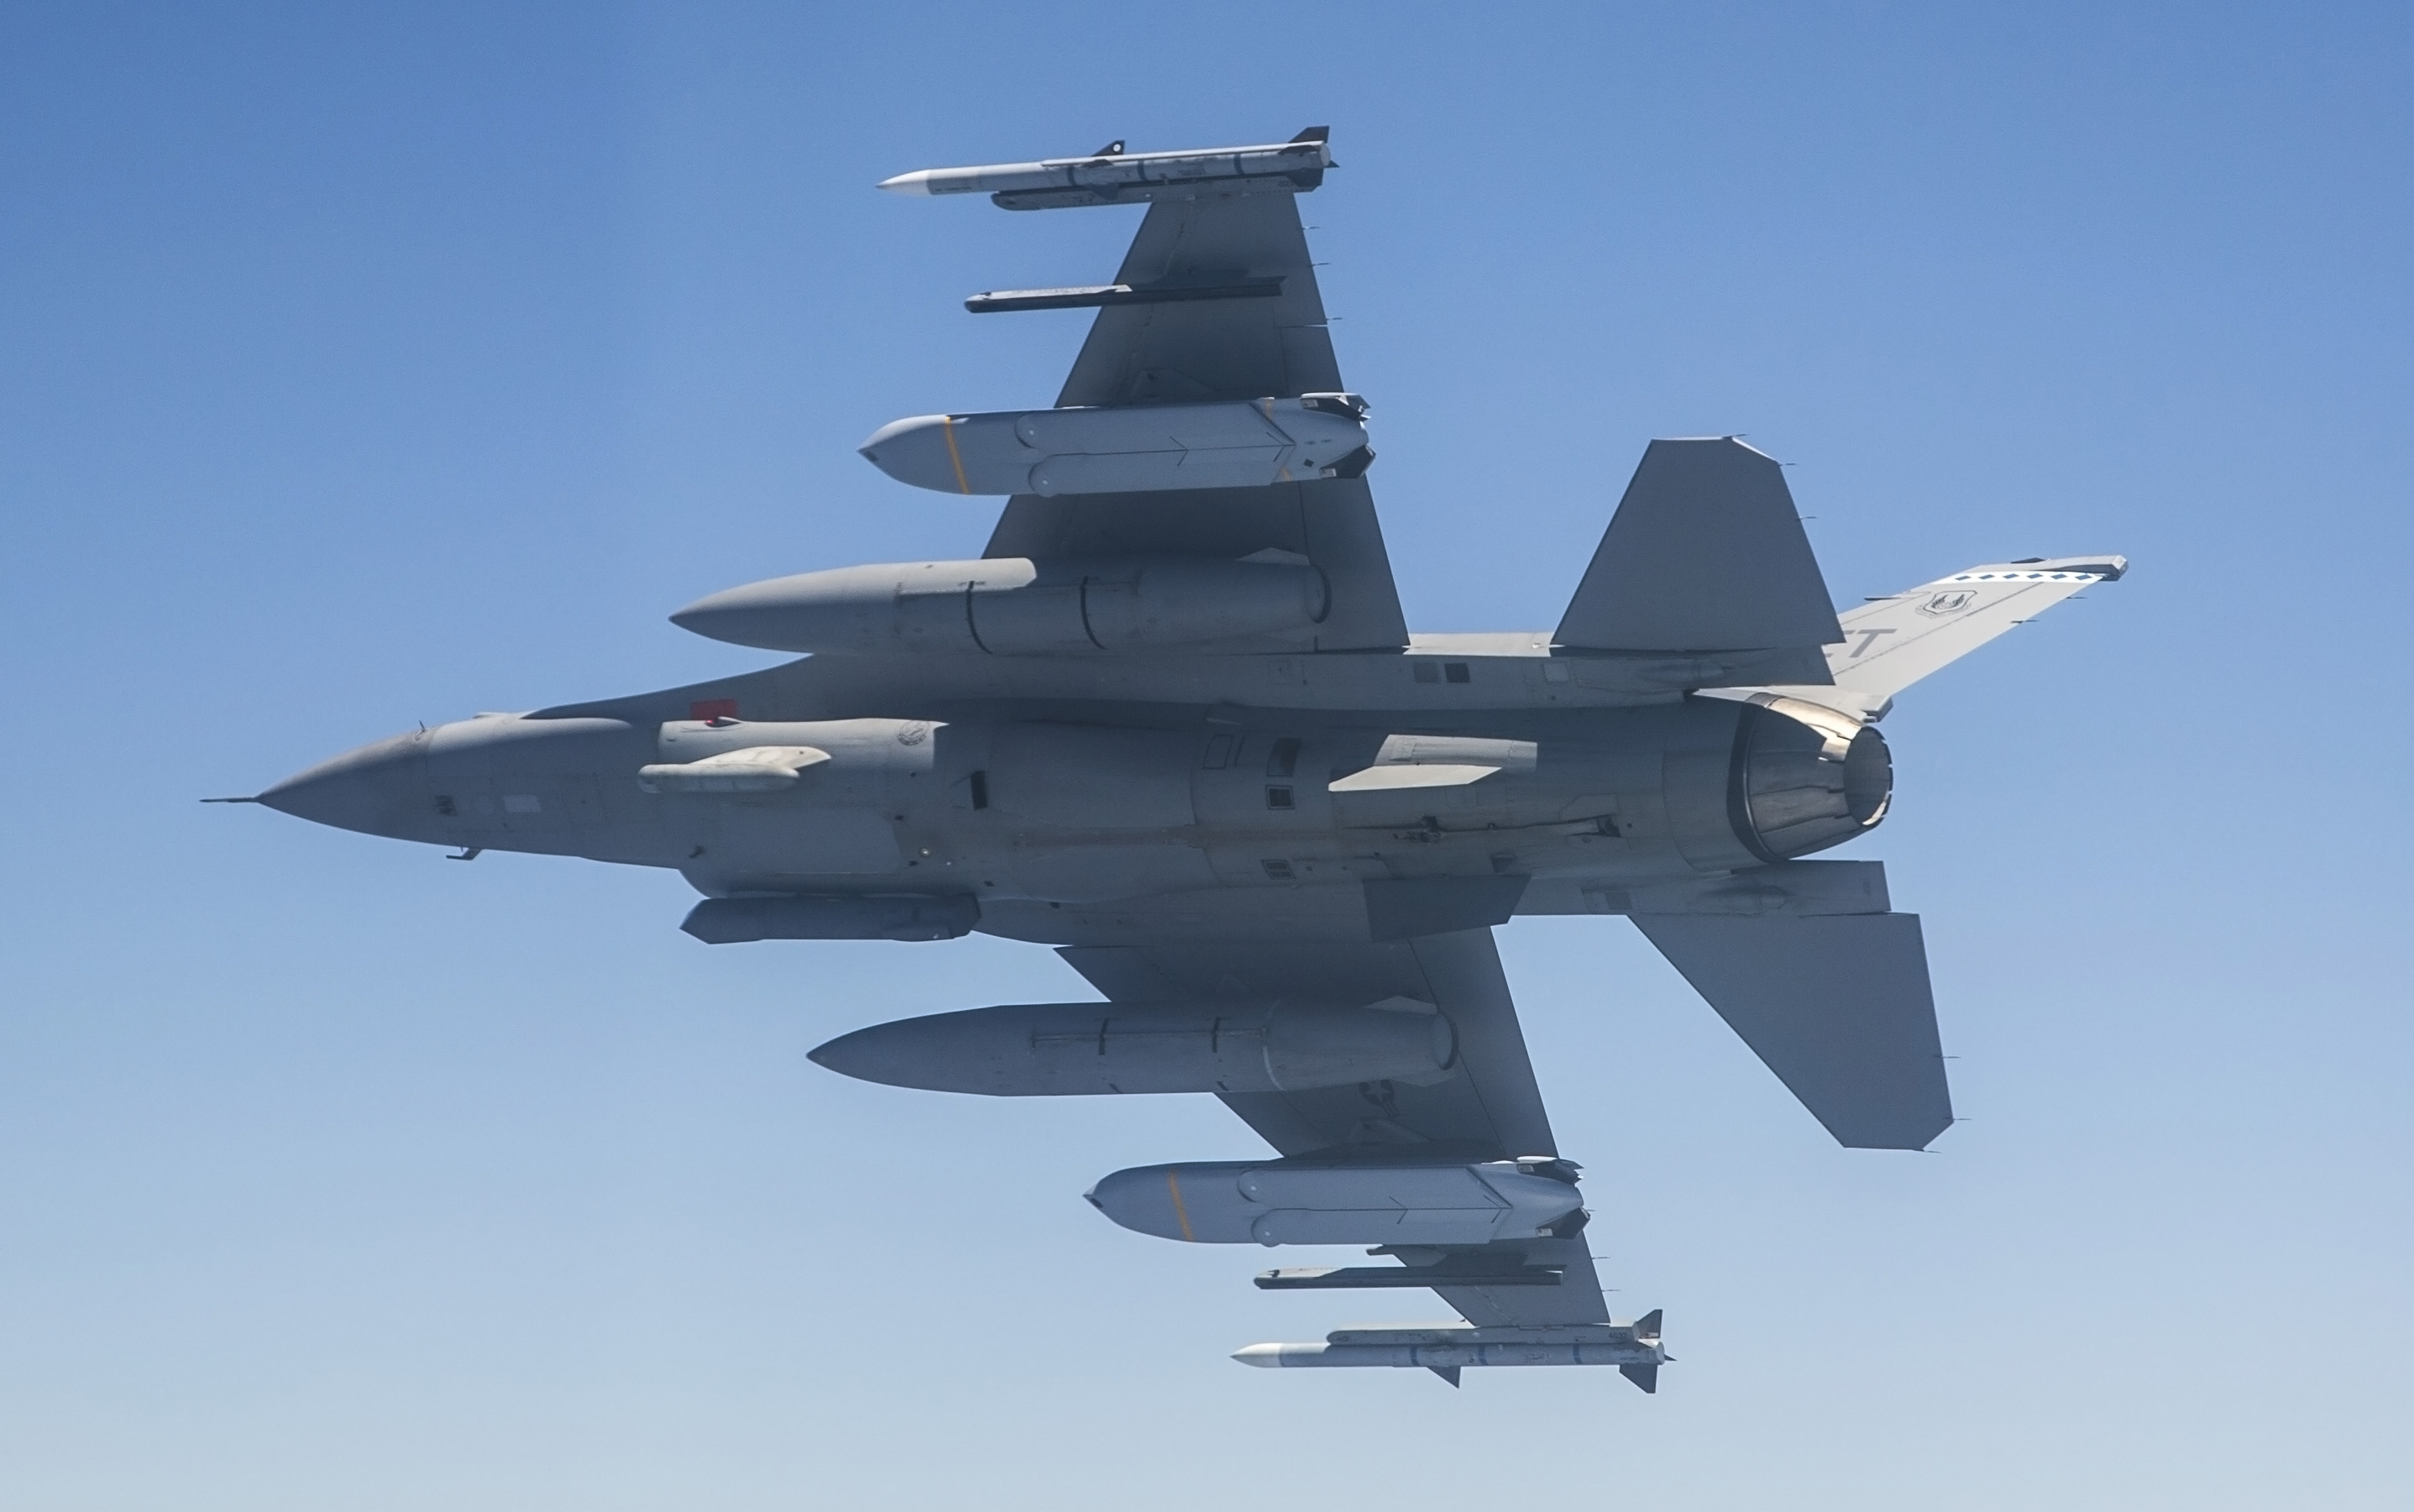 F-16   40-й испытательной эскадрильи АБ Eglin, шт. Флорида, модернизированный по программе OFP M7.2+, с двумя крылатыми ракетами  большой дальности  JASSM-ER и двумя AIM-120D AMRAAM, фото сделано 25 июля 2018 года над полигоном  АБ Eglin